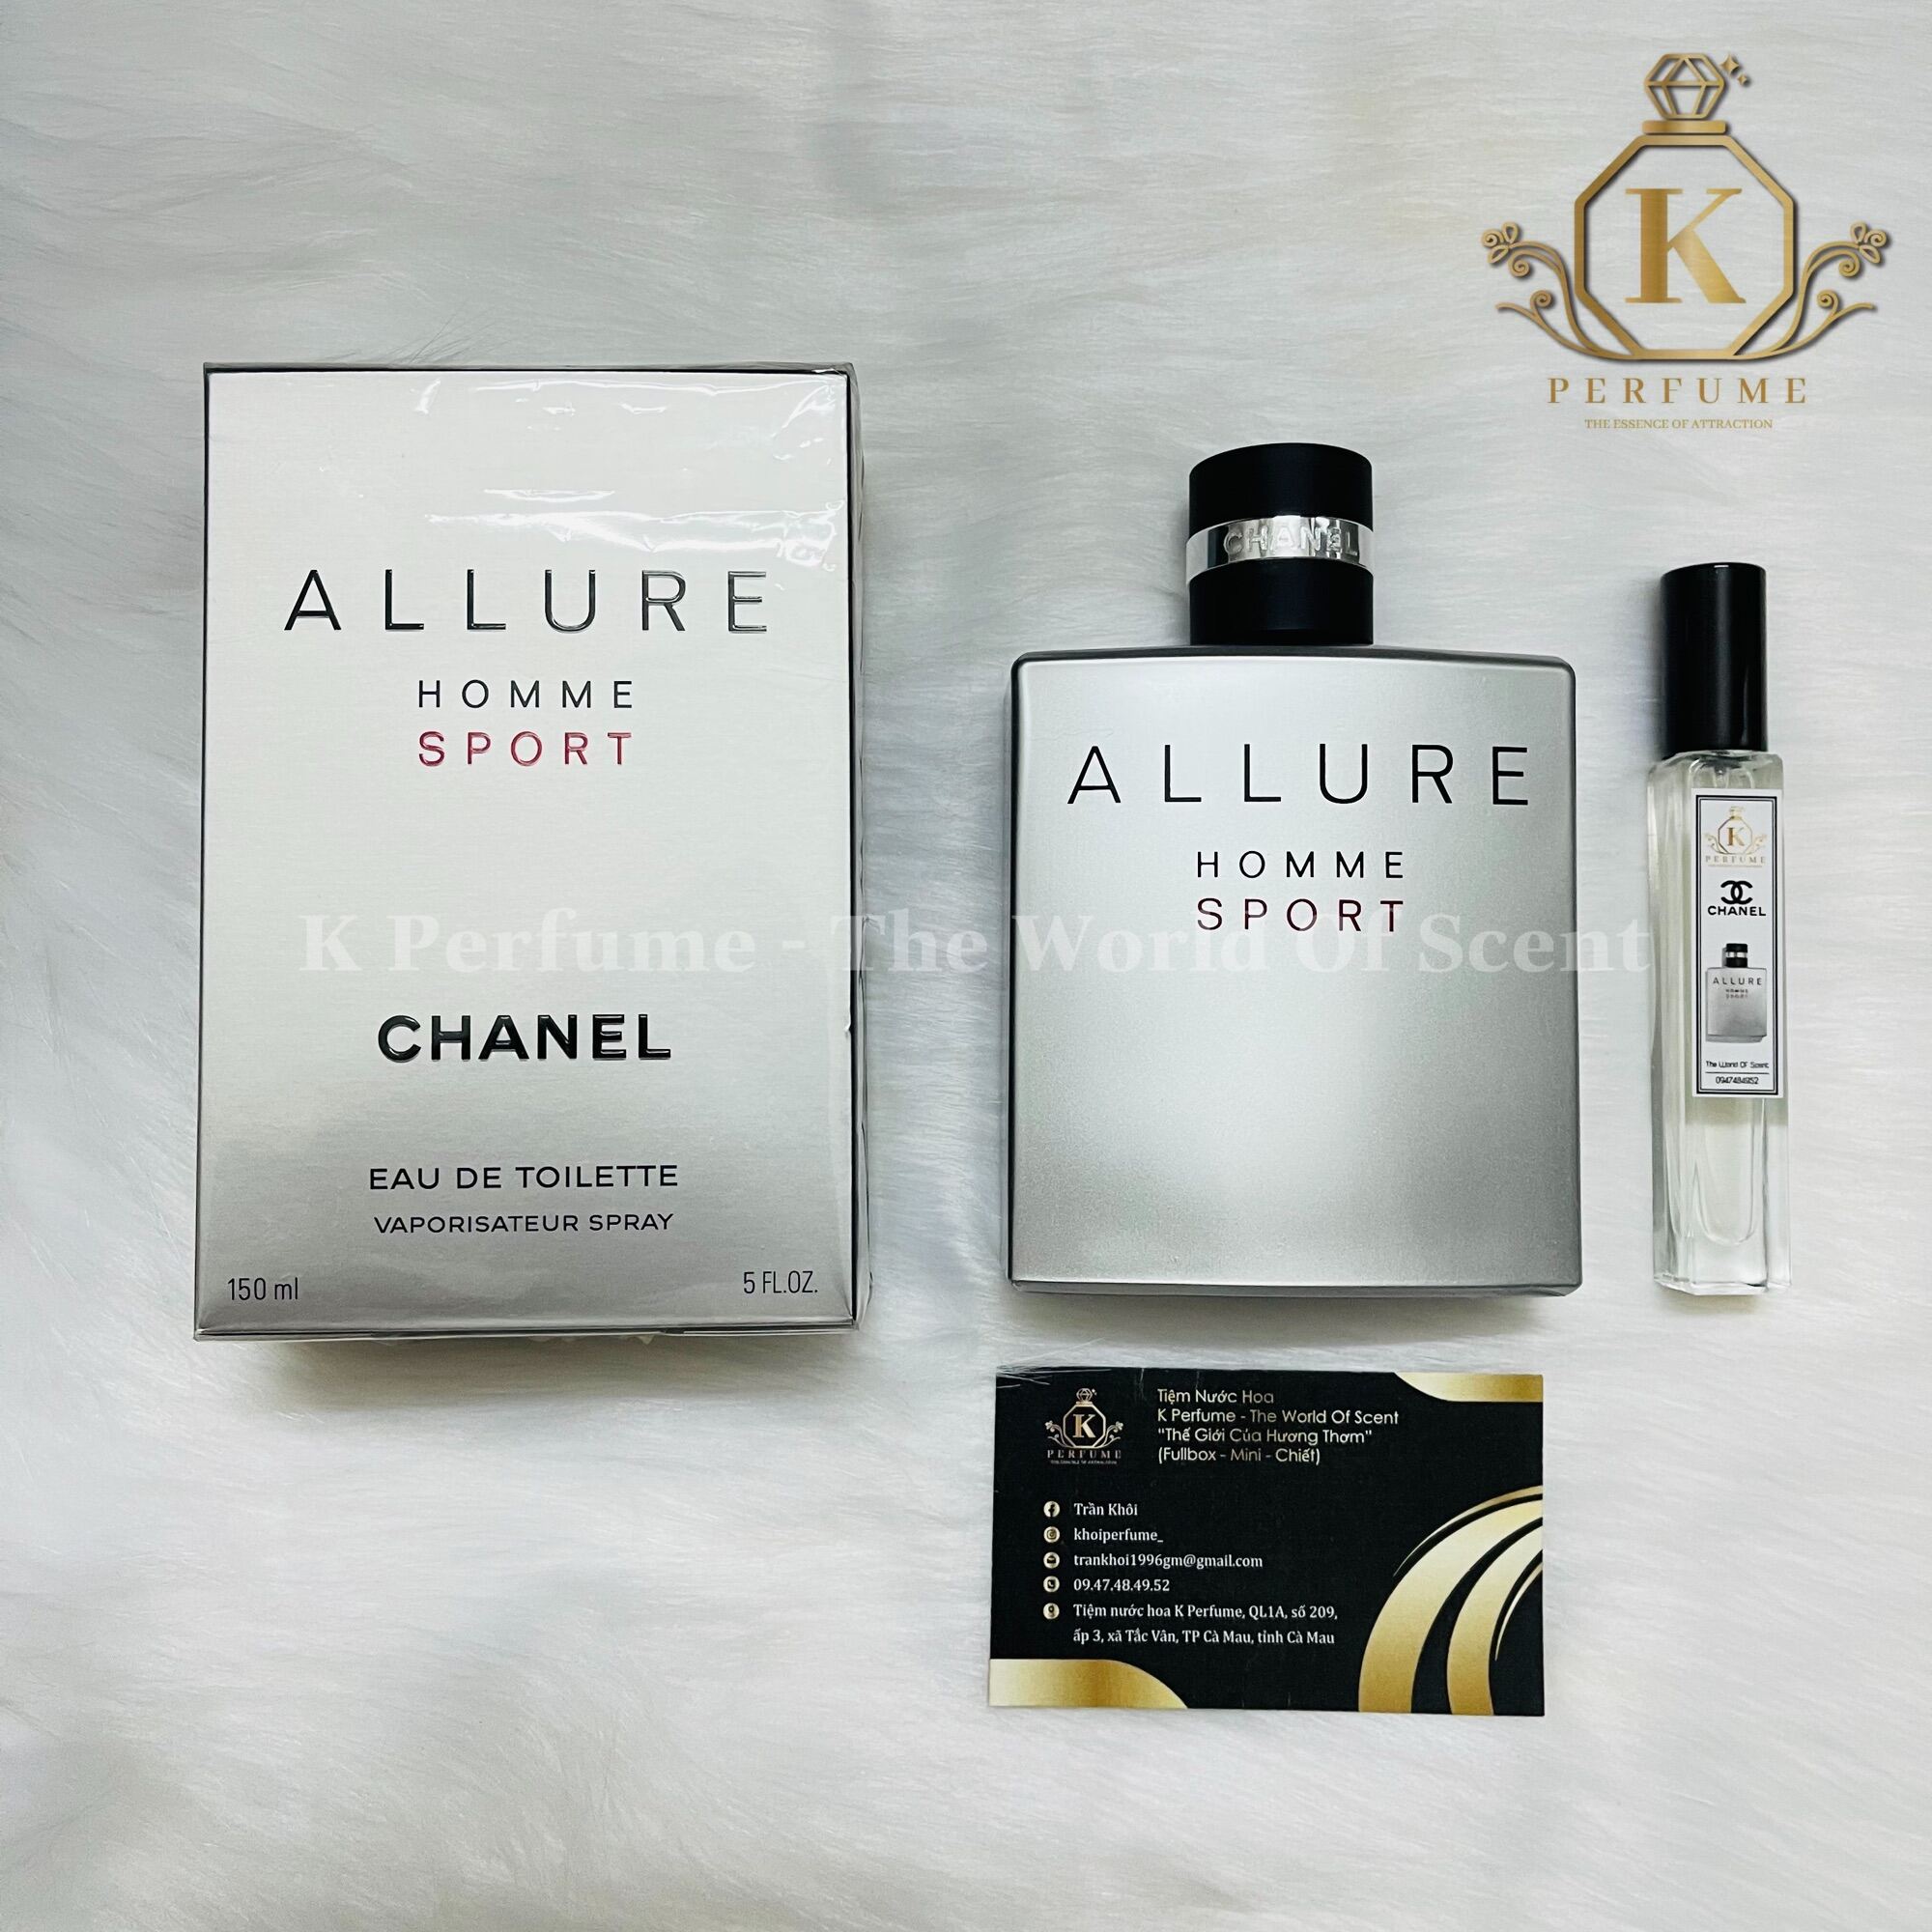 Nươc hoa nam Chanel Allure Homme Edition Blanche EDP 100ml  Wowmart VN   100 hàng ngoại nhập